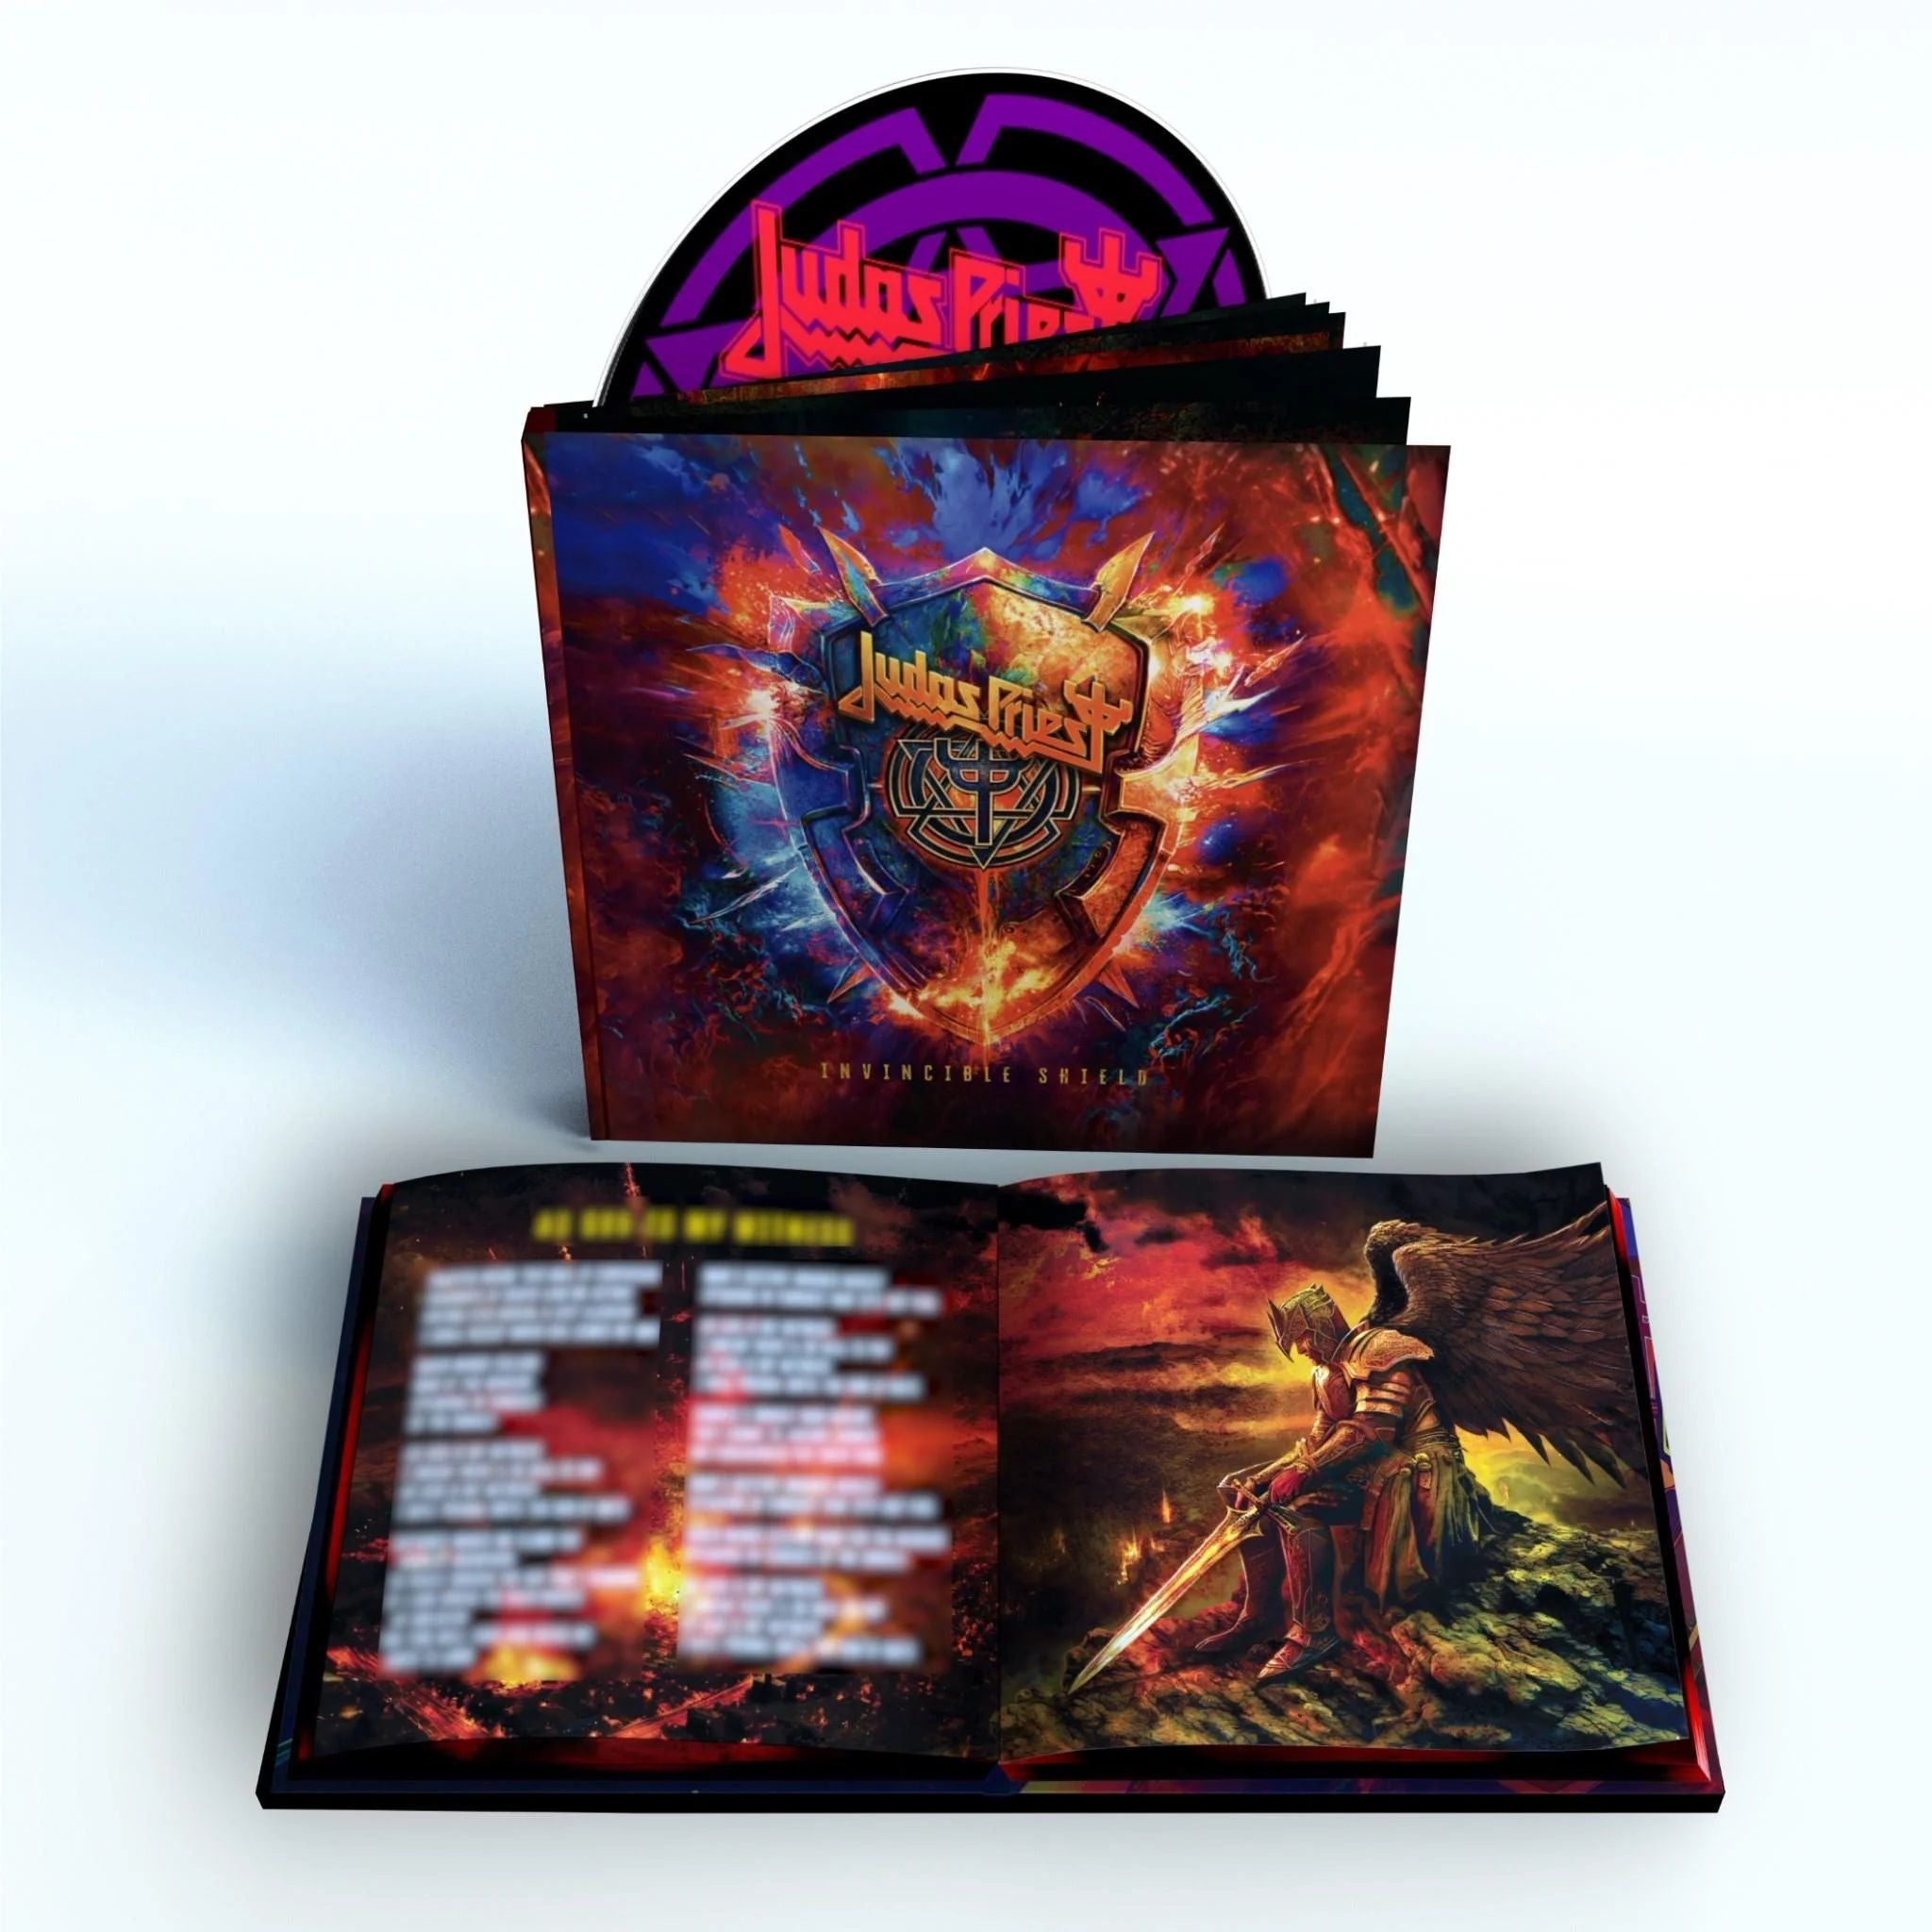 Judas Priest - Invincible Shield (Deluxe Edition) - CD - New - PRE-ORDER